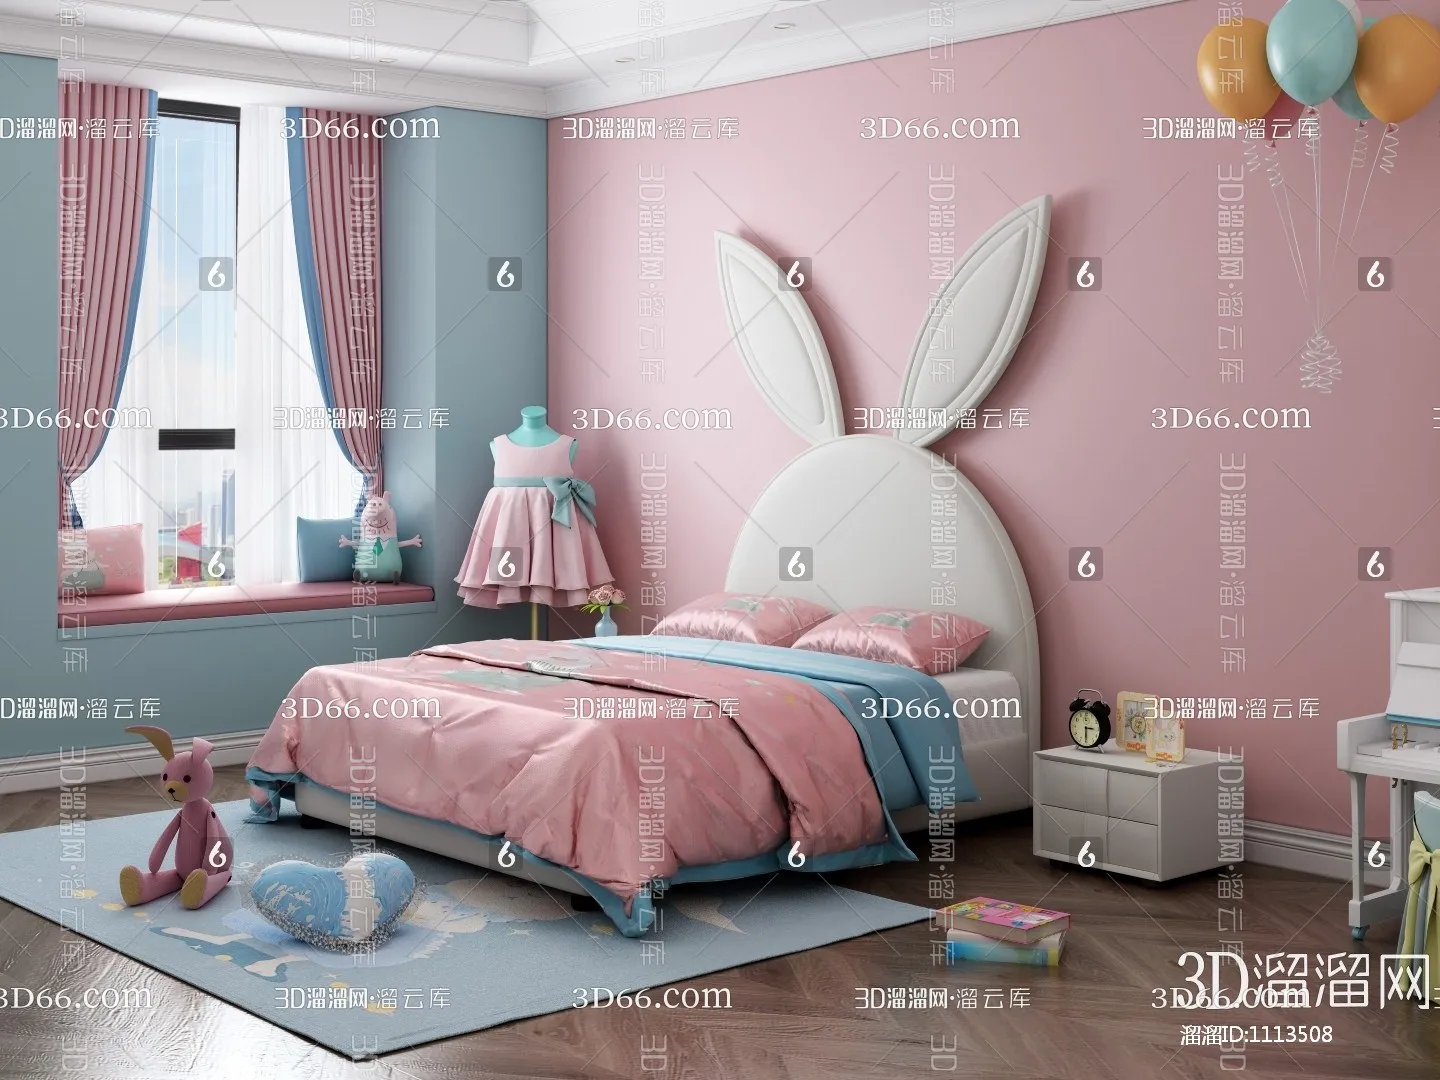 Children Room 3D Scenes – 0305